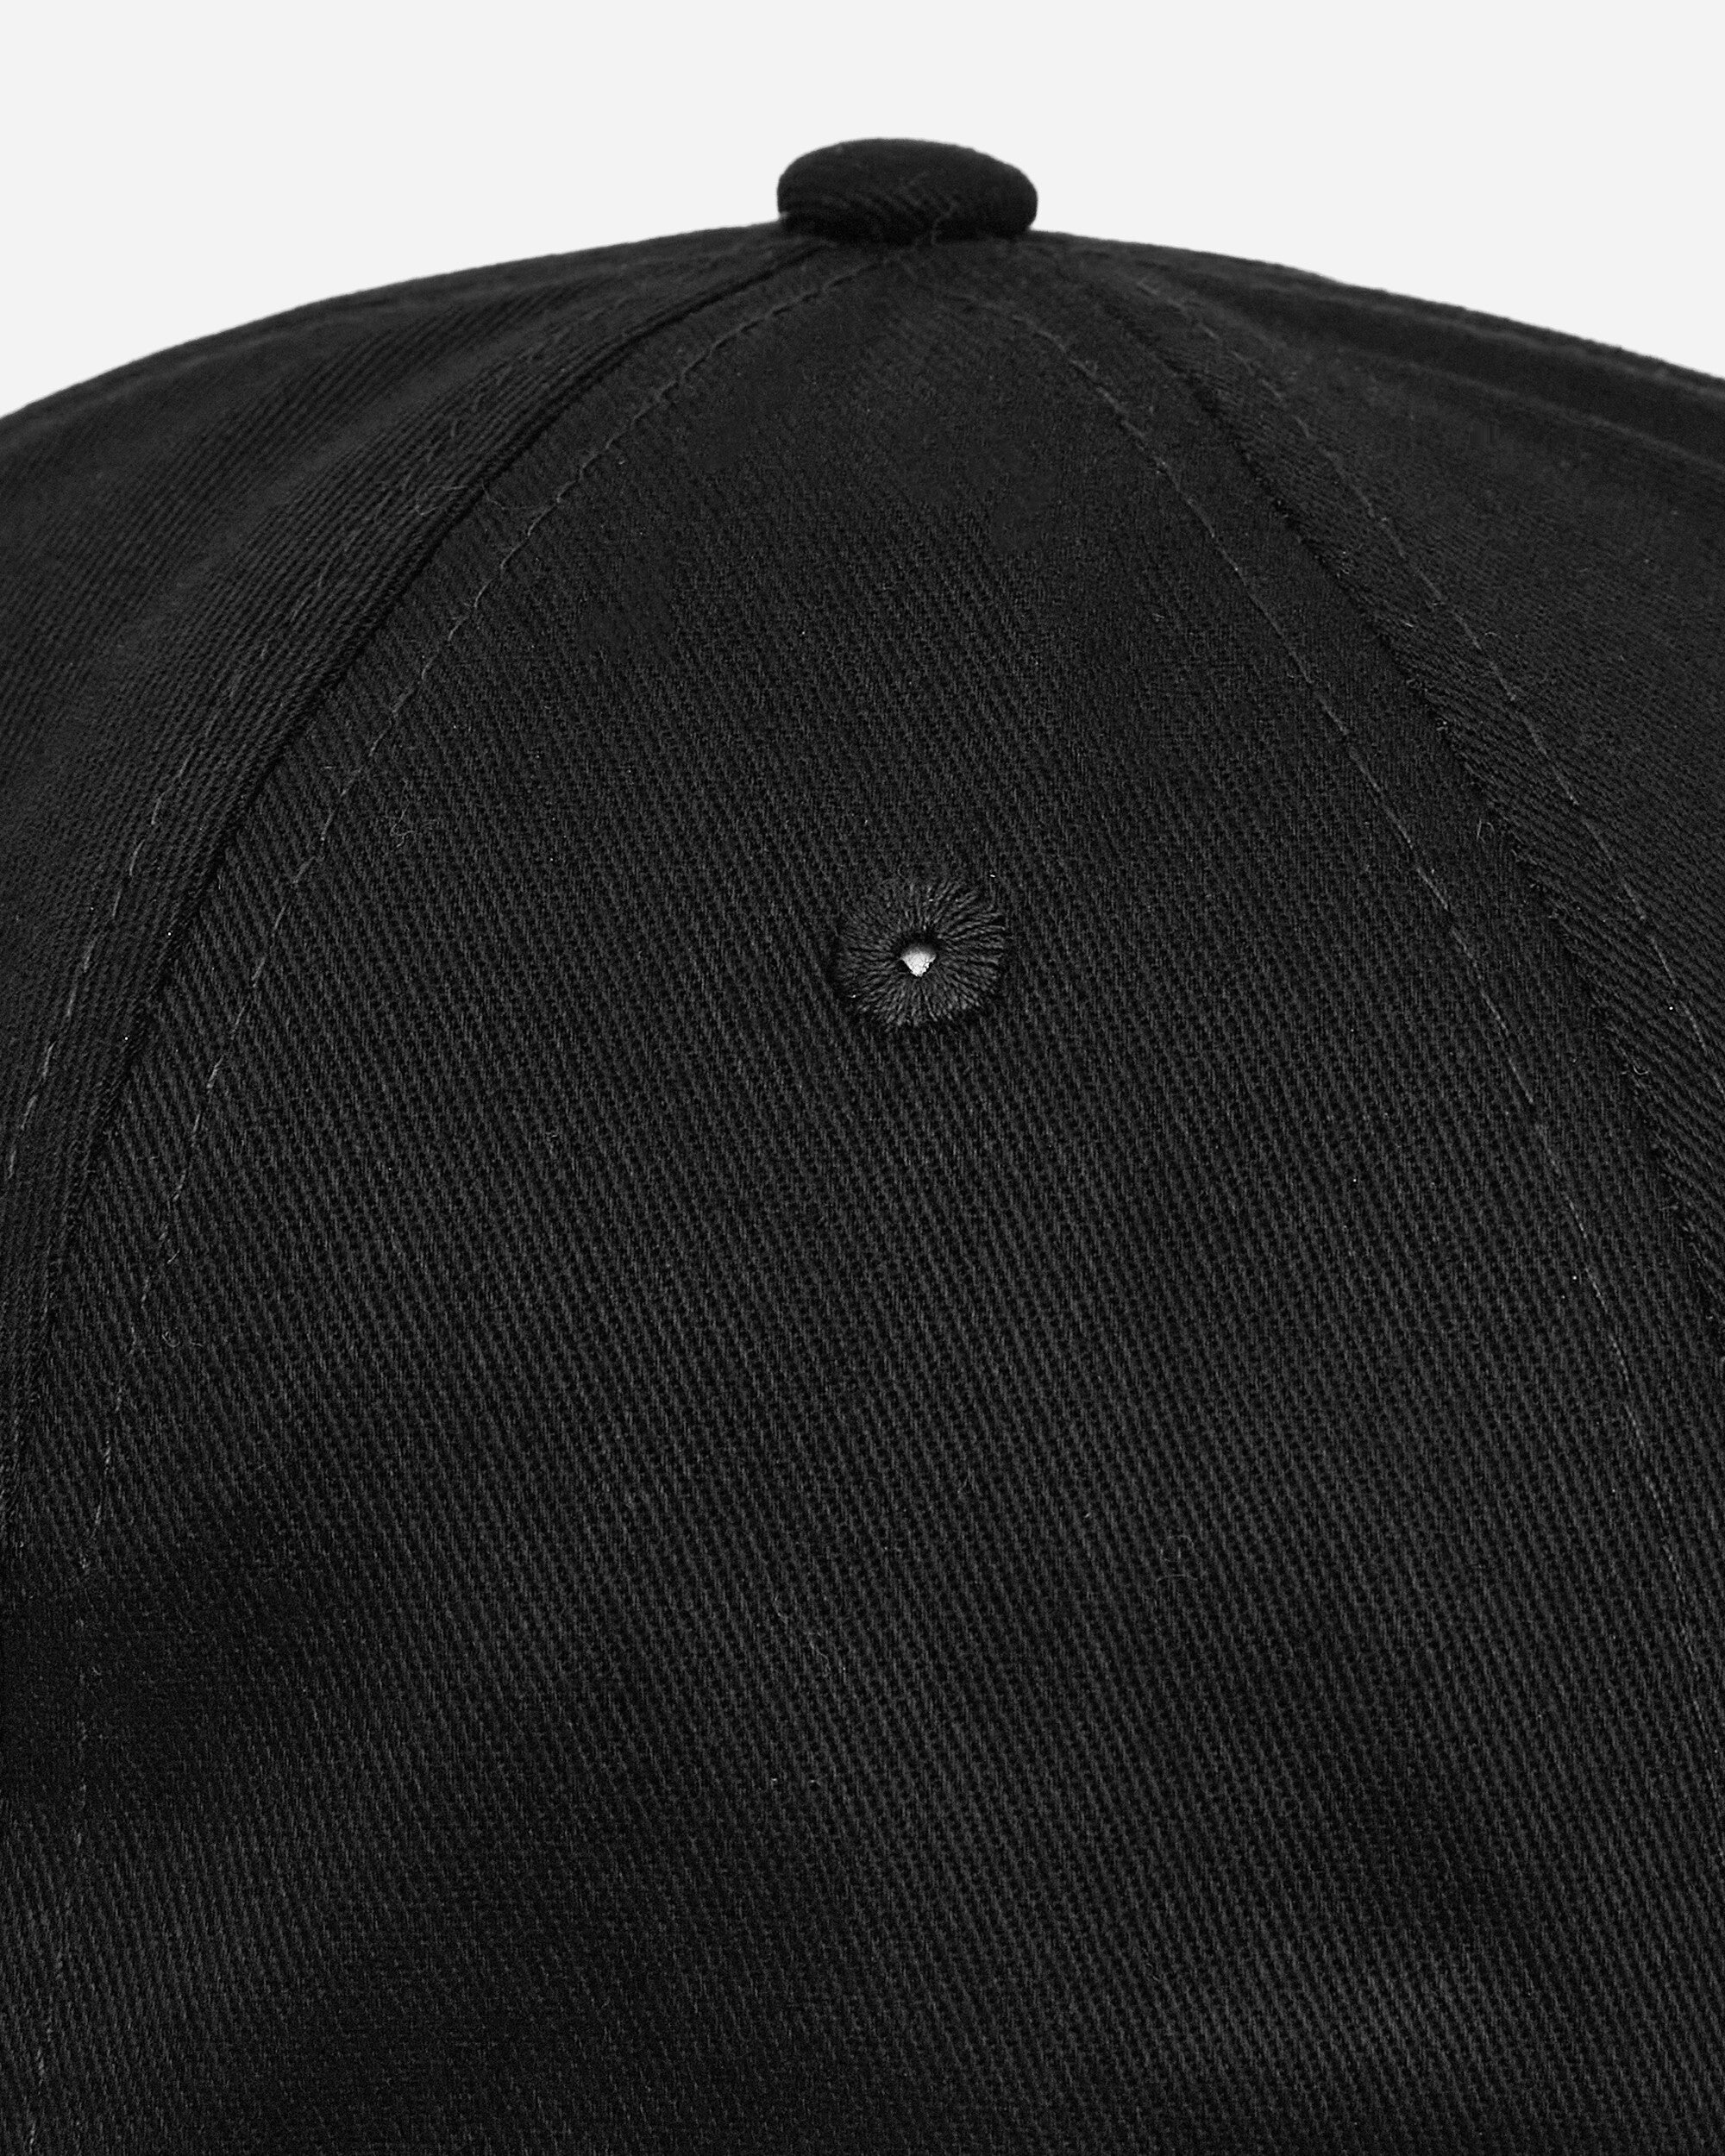 FUCT Six Panels Cap Black Hats Caps TBMW205FA03 BLK0001